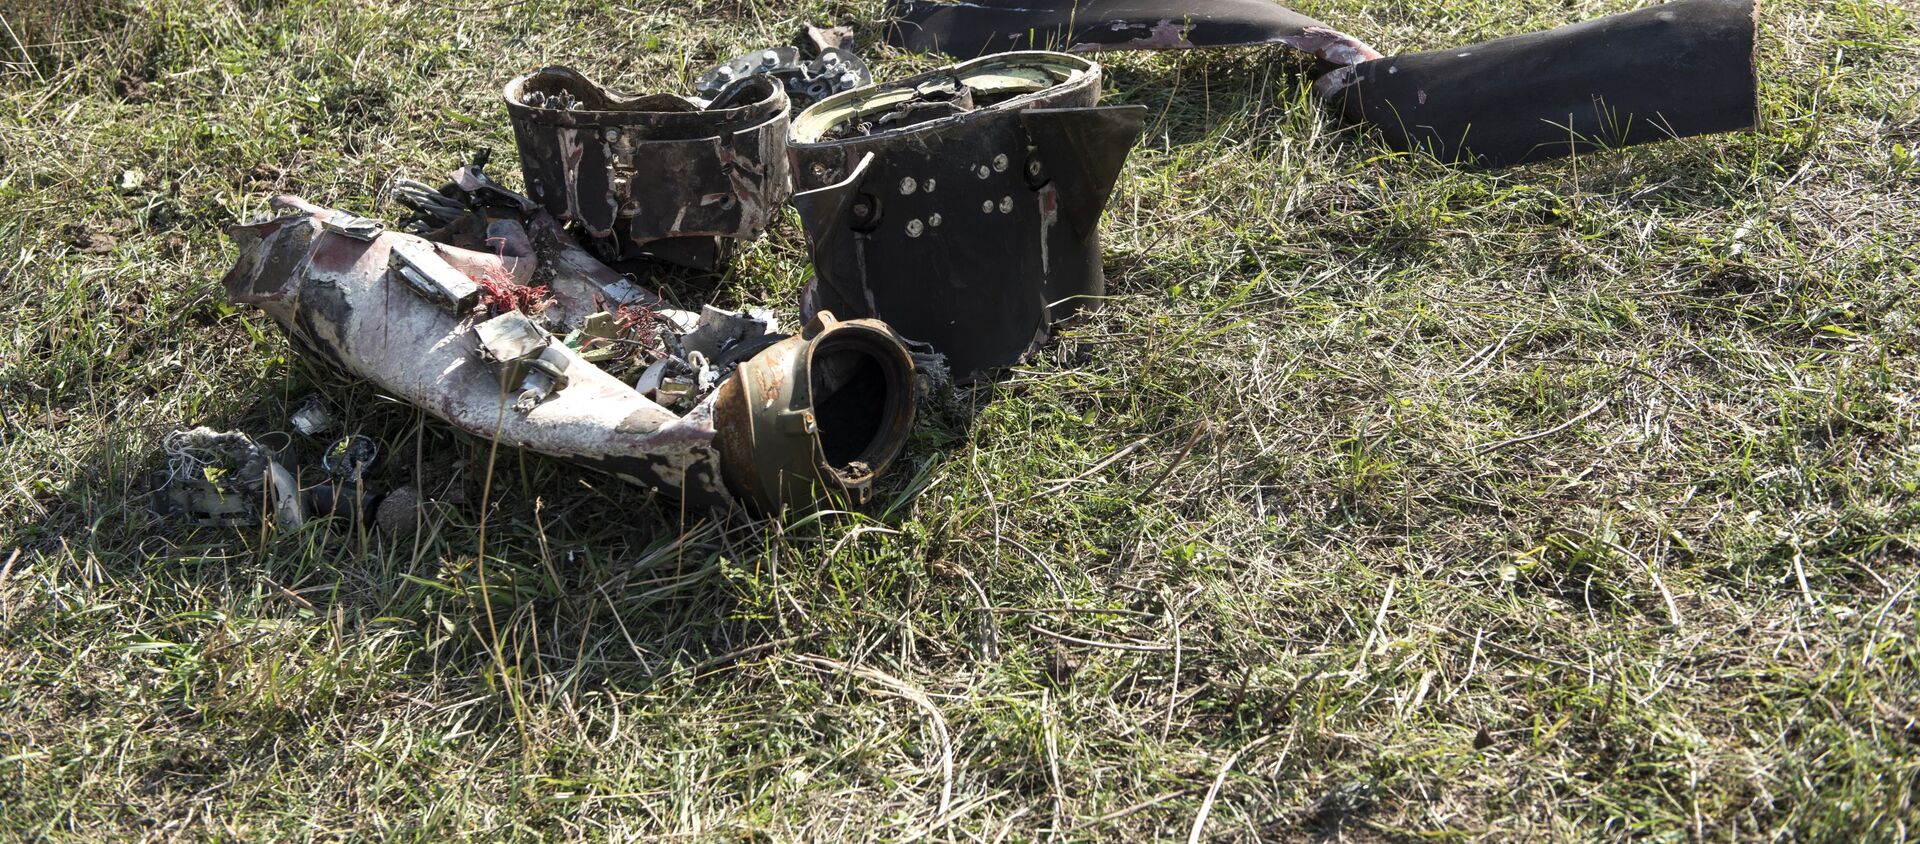 Фрагменты сбитого беспилотника в Степанакерте, Нагорный Карабах, в октябре 2020 года - Sputnik Латвия, 1920, 27.11.2020